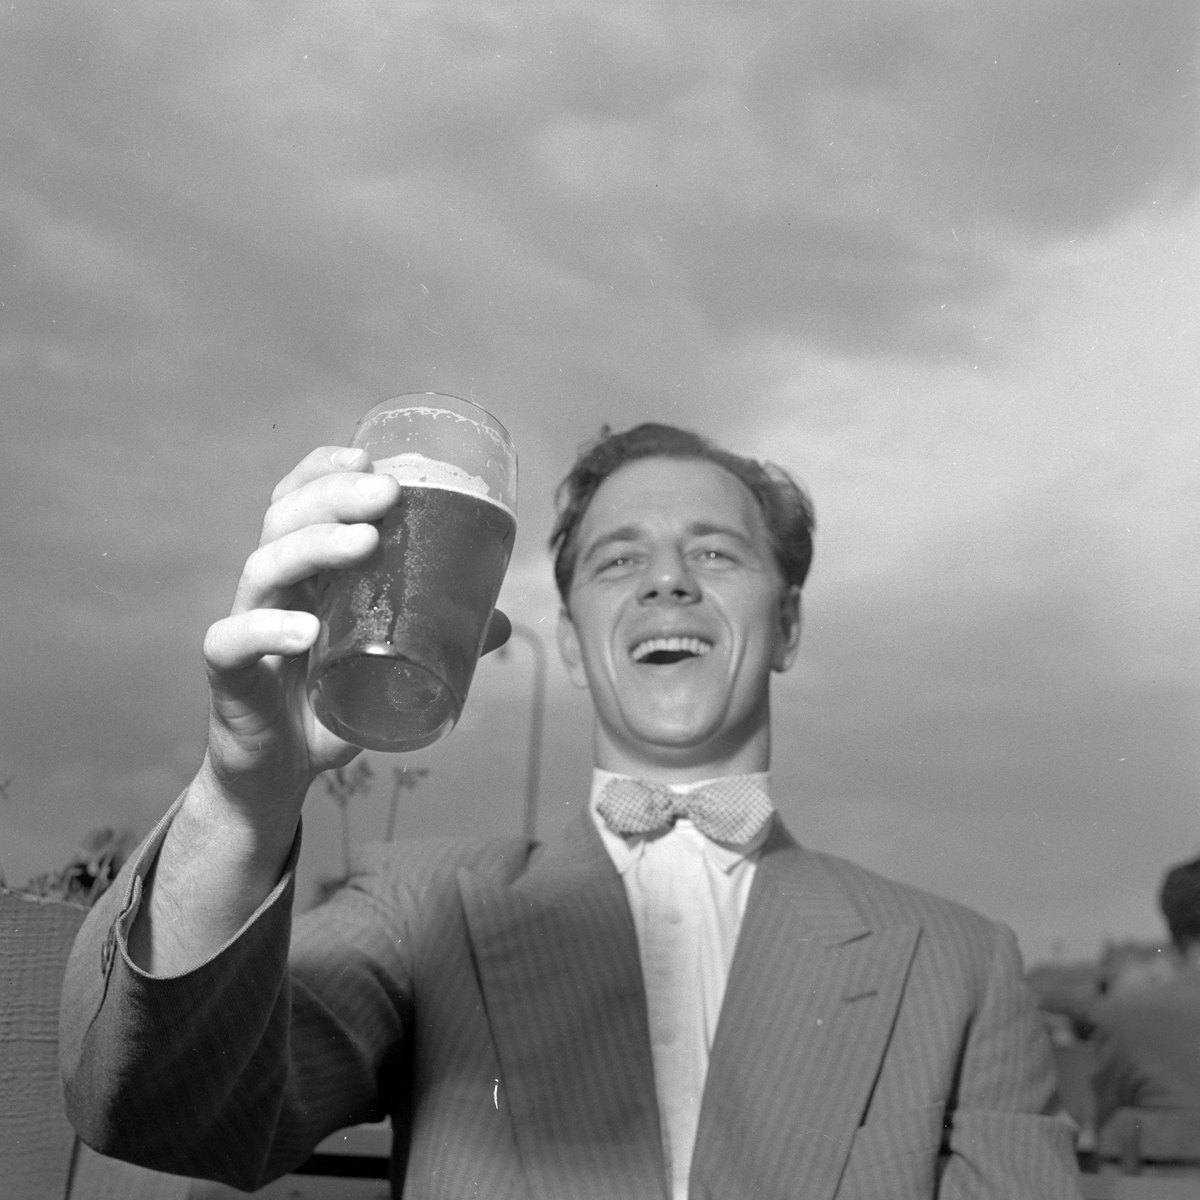 Mann nyter en øl på Skansen i sommervarmen